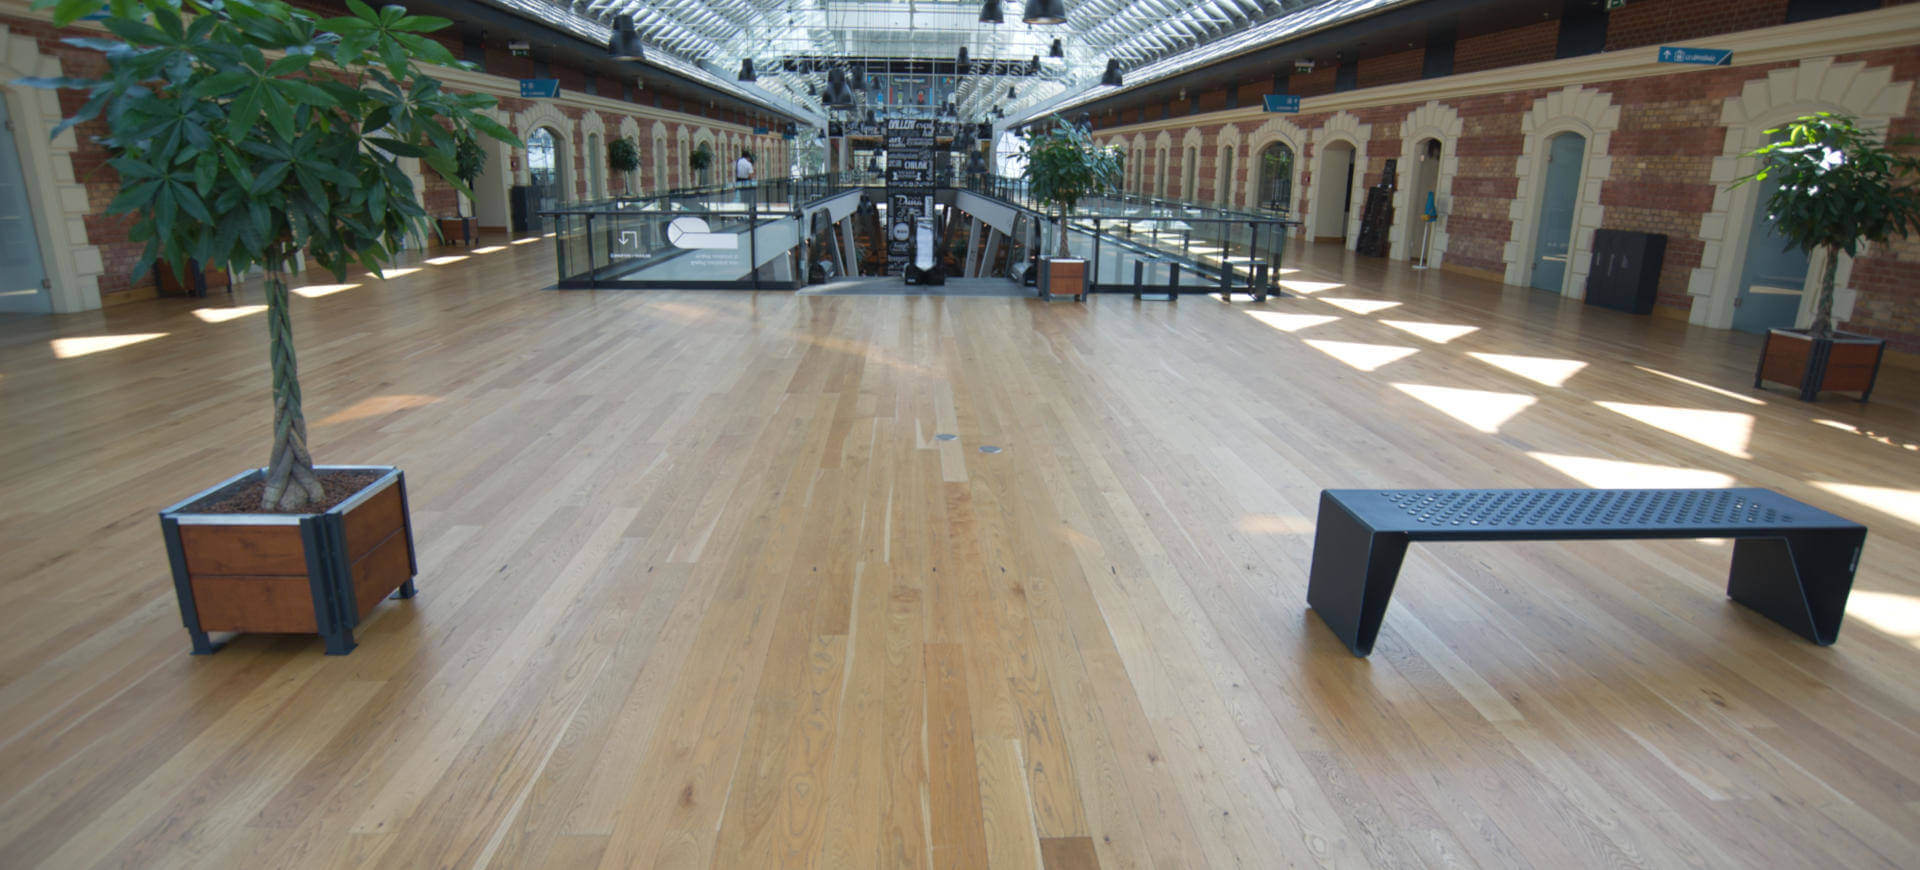 Wood Floor Partners, sols pour espaces culturels